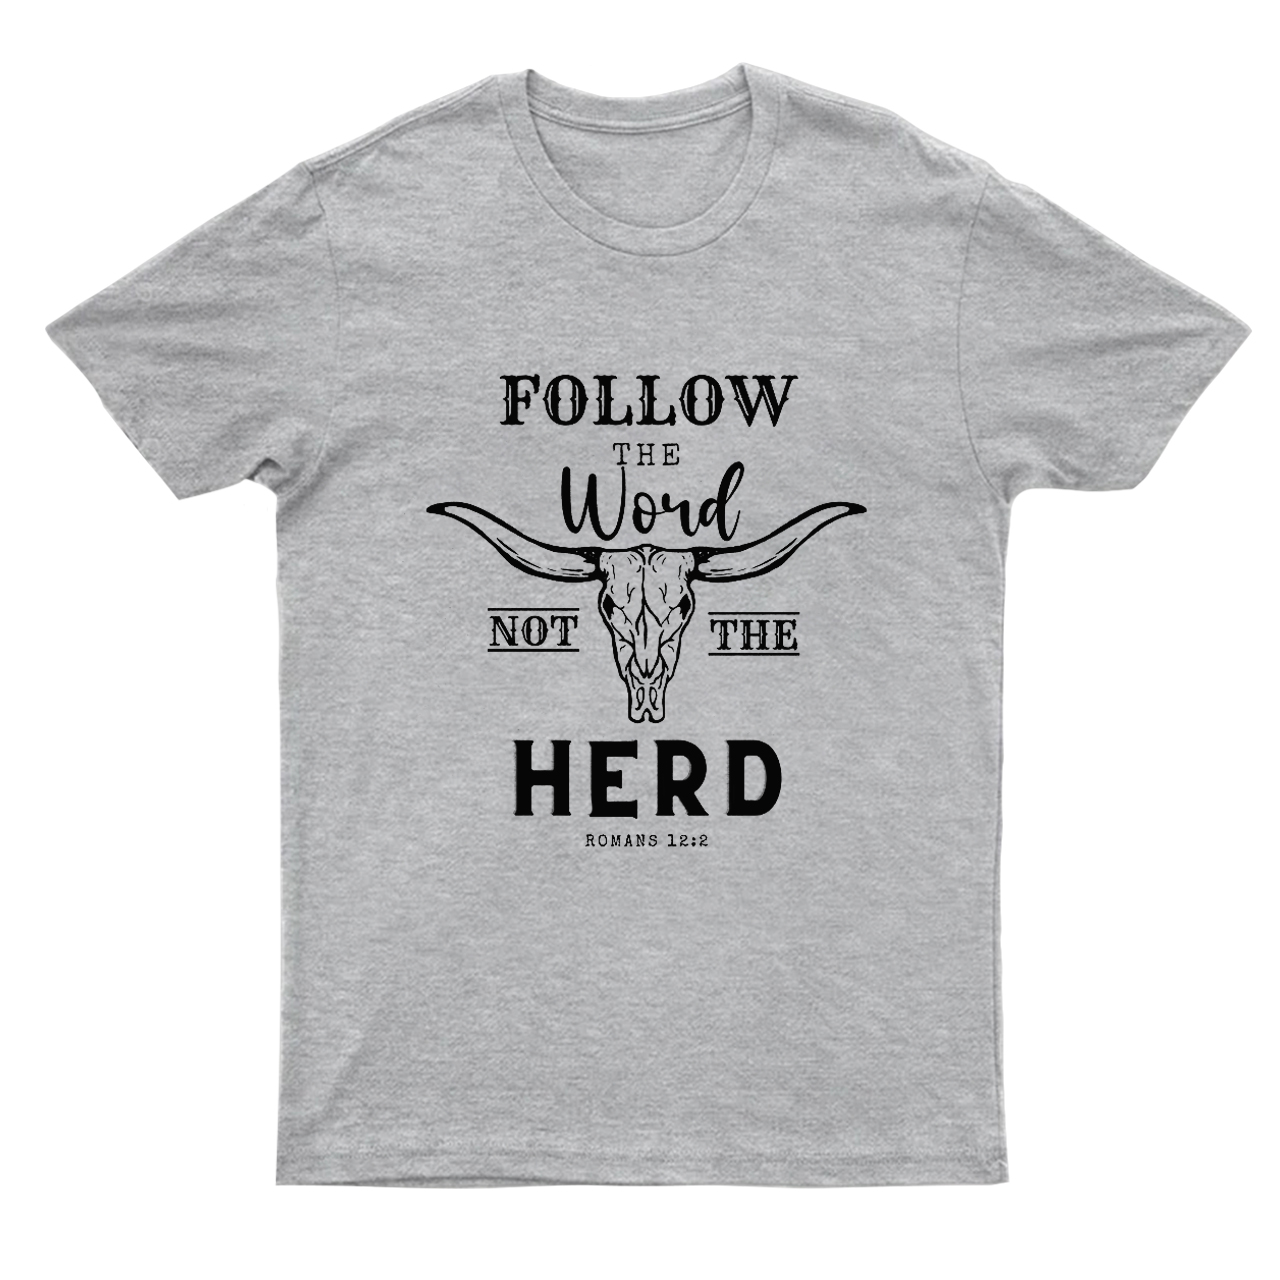 Follow the Word not the Herd T-shirt